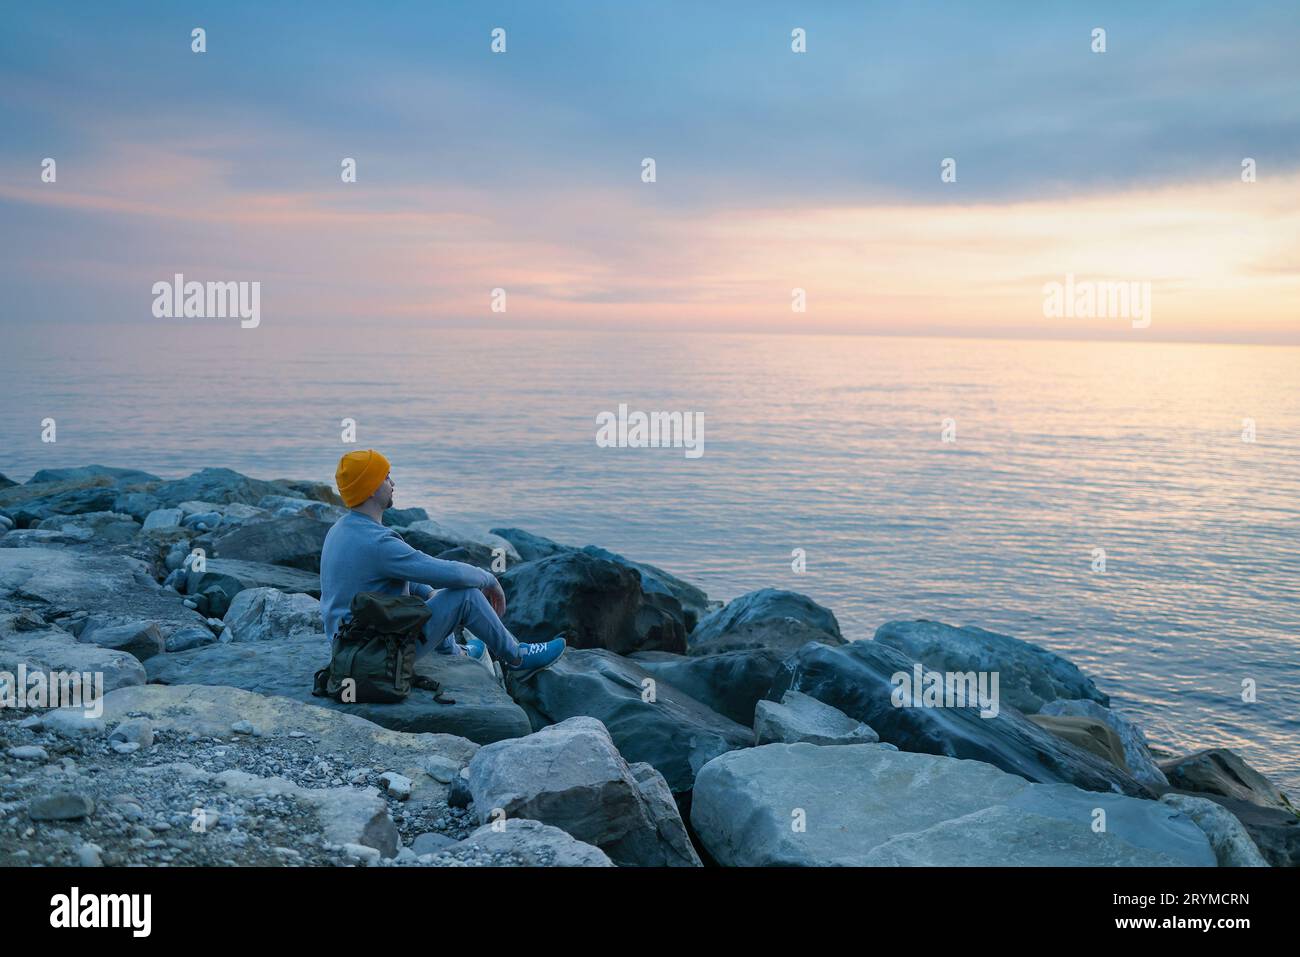 Ein Aukasier mit blauem Pullover und Hut hält seinen Rucksack und schaut auf das ruhige Meer. Stockfoto